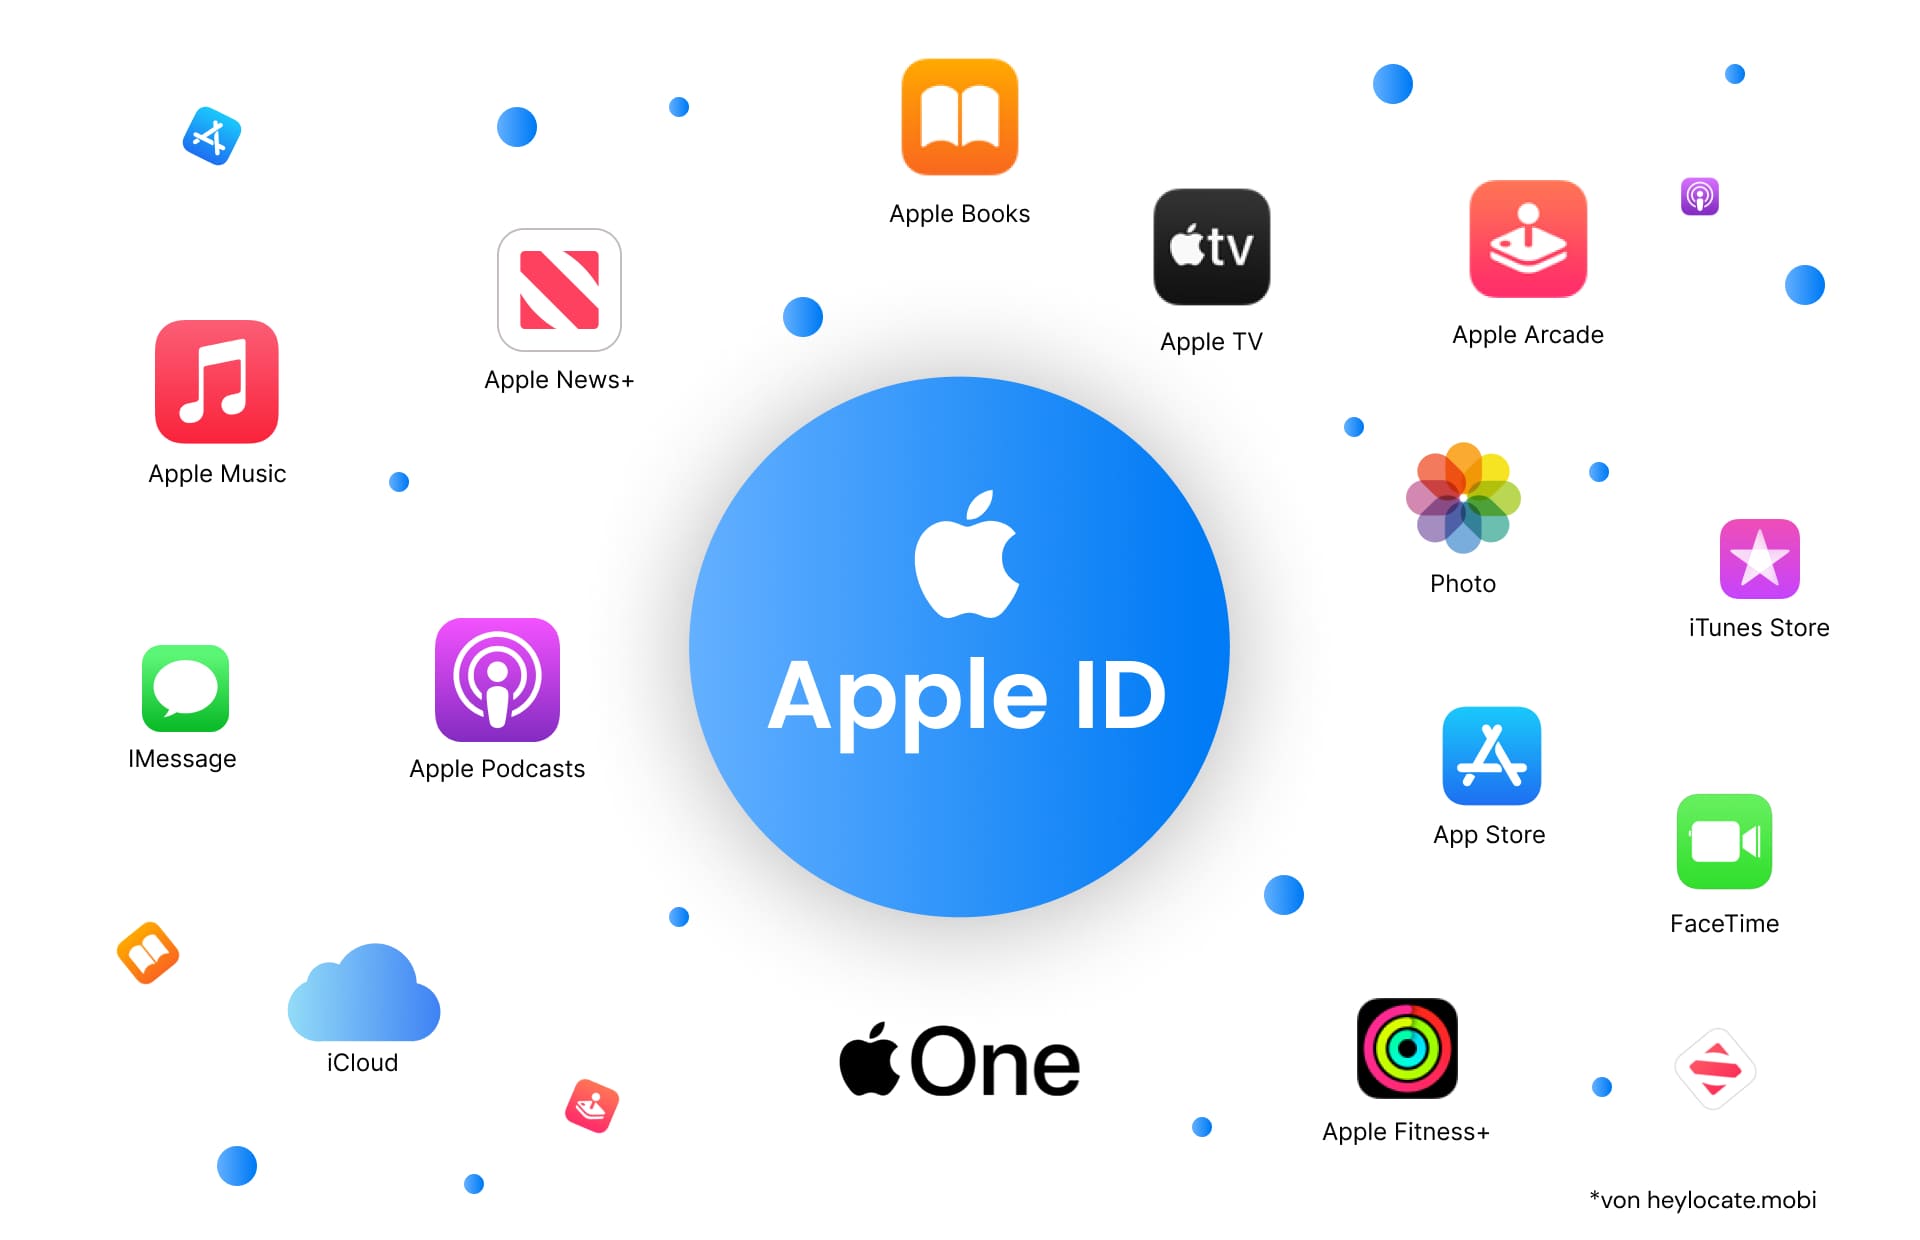 Grafische Darstellung einer Apple-ID, umgeben von verschiedenen Apple-Service-Symbolen wie Apple Music, Apple News+, Apple TV, Apple Books, Apple Arcade, Photo, iTunes Store, iMessage, Apple Podcasts, iCloud, App Store, FaceTime, Apple One und Apple Fitness+